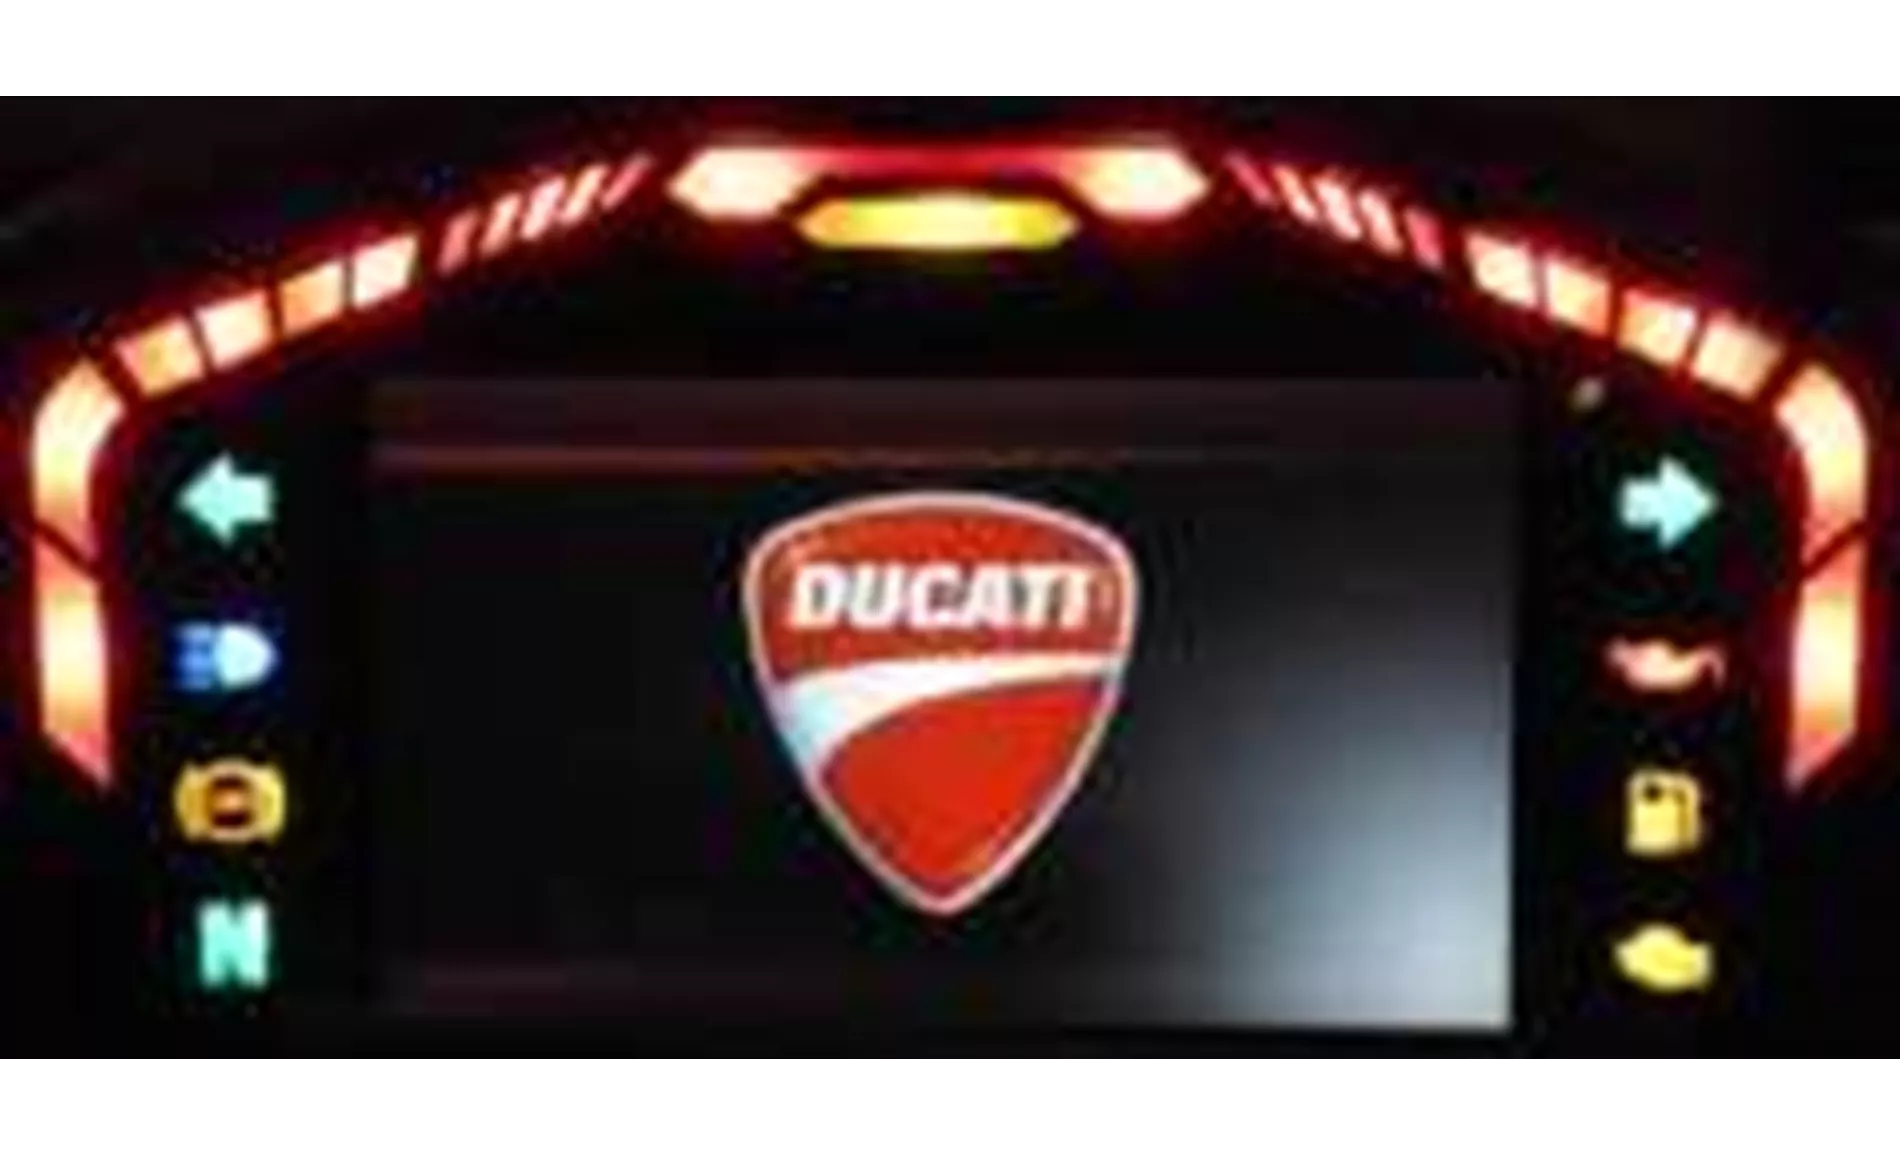 Ducati 1199 Panigale Tricolor 2012